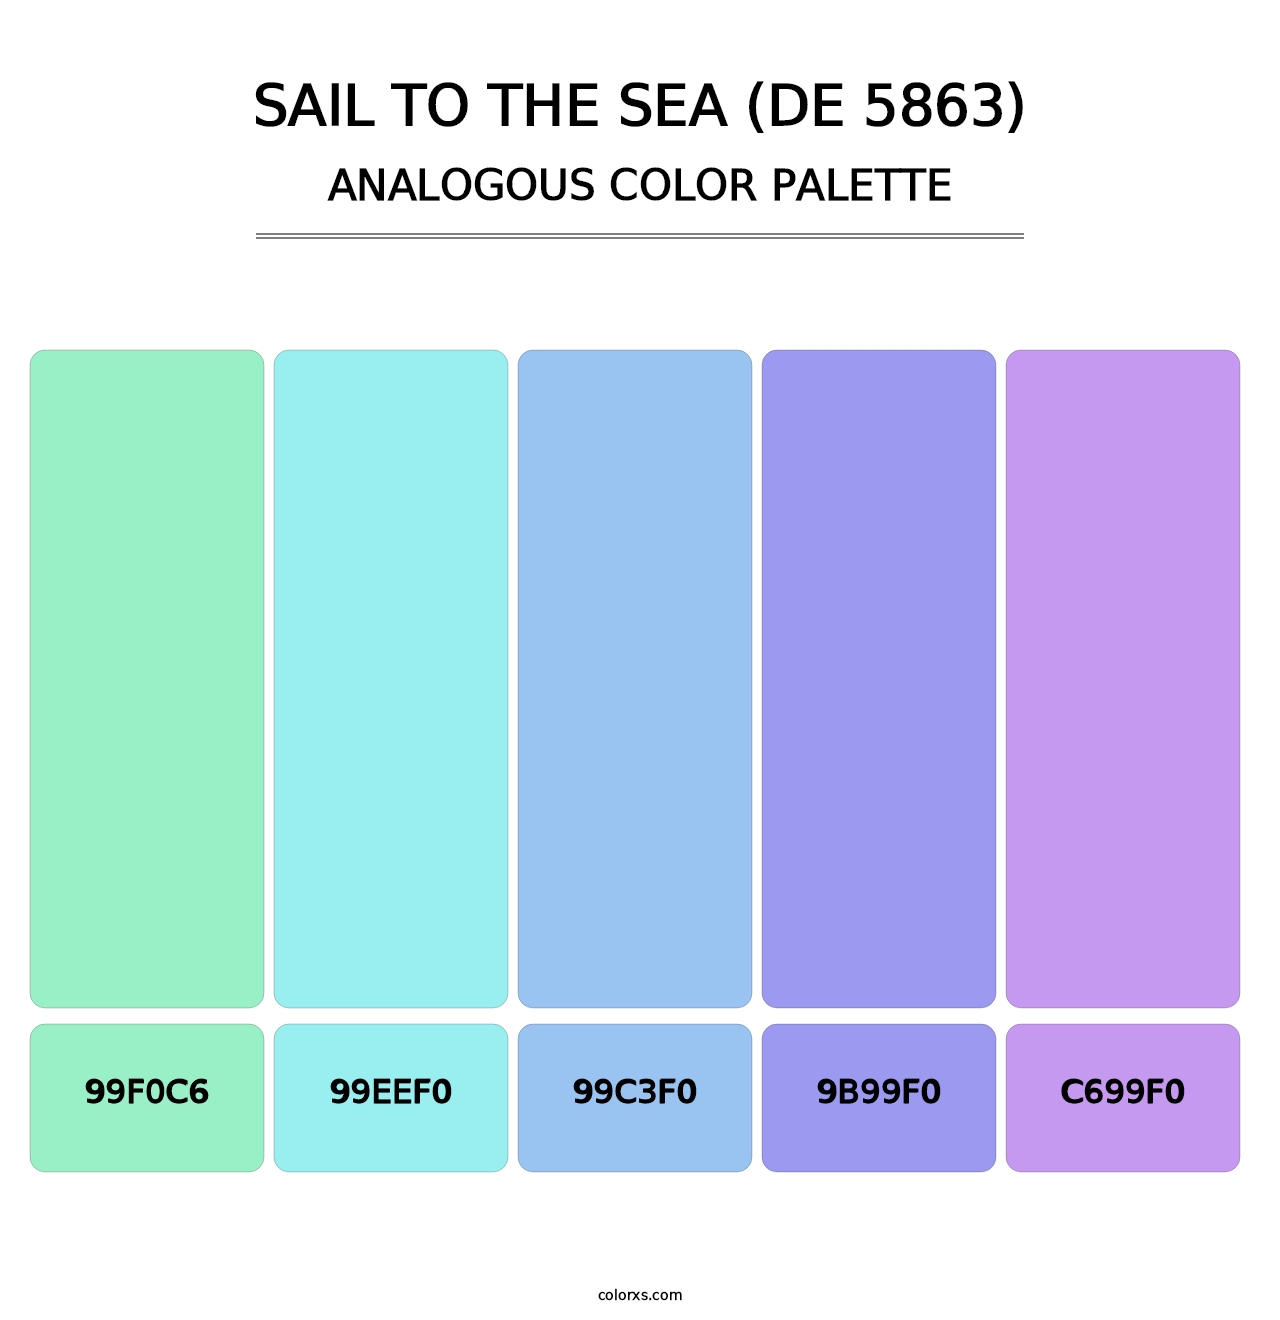 Sail to the Sea (DE 5863) - Analogous Color Palette